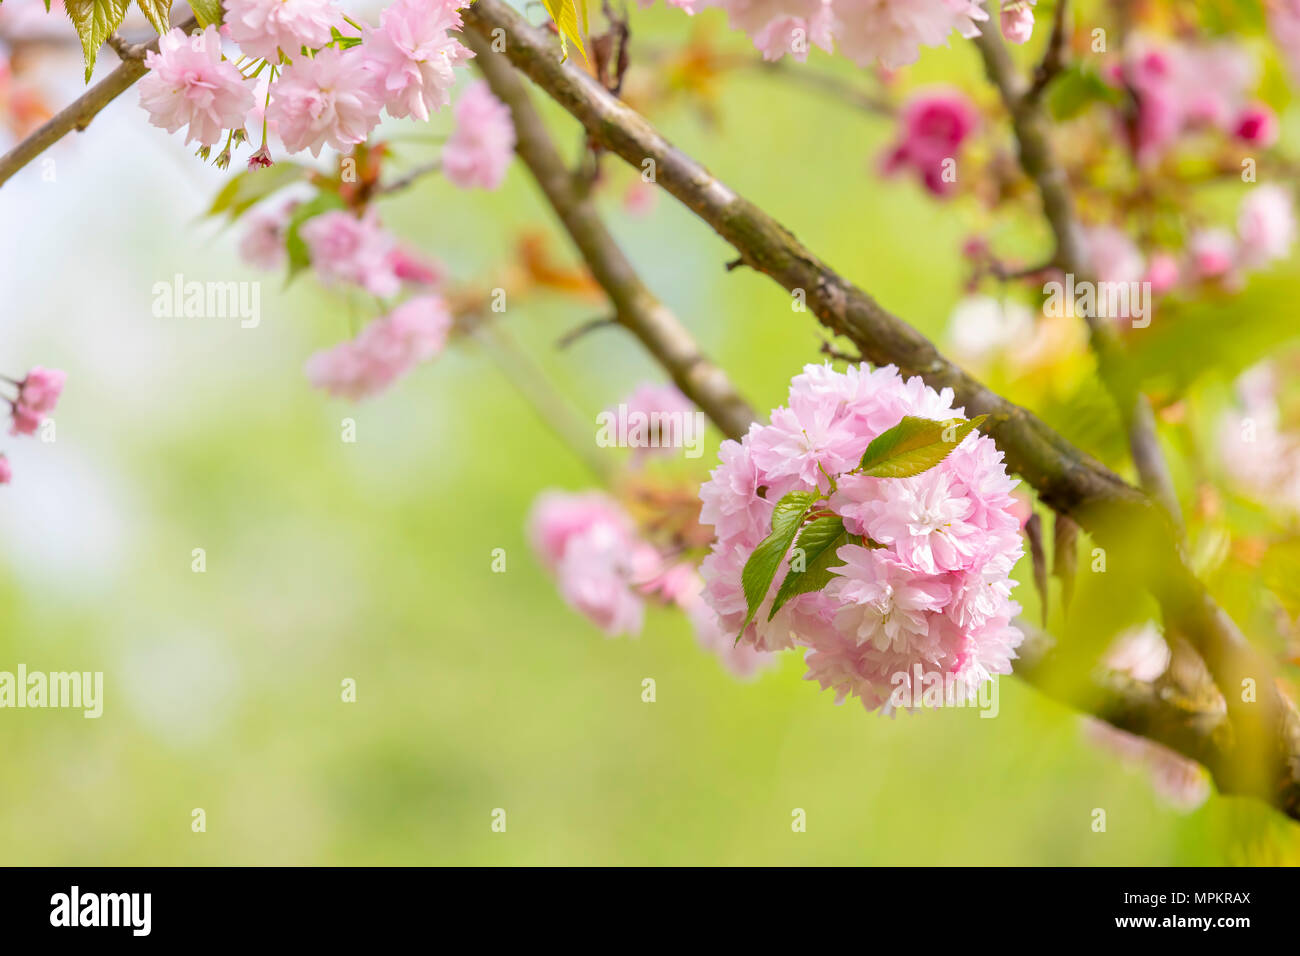 Blüte der Baum als Zeichen des Frühlings. Selektive konzentrieren. Soft Focus Frühling Hintergrund. Fokus auf Green Leaf. Stockfoto